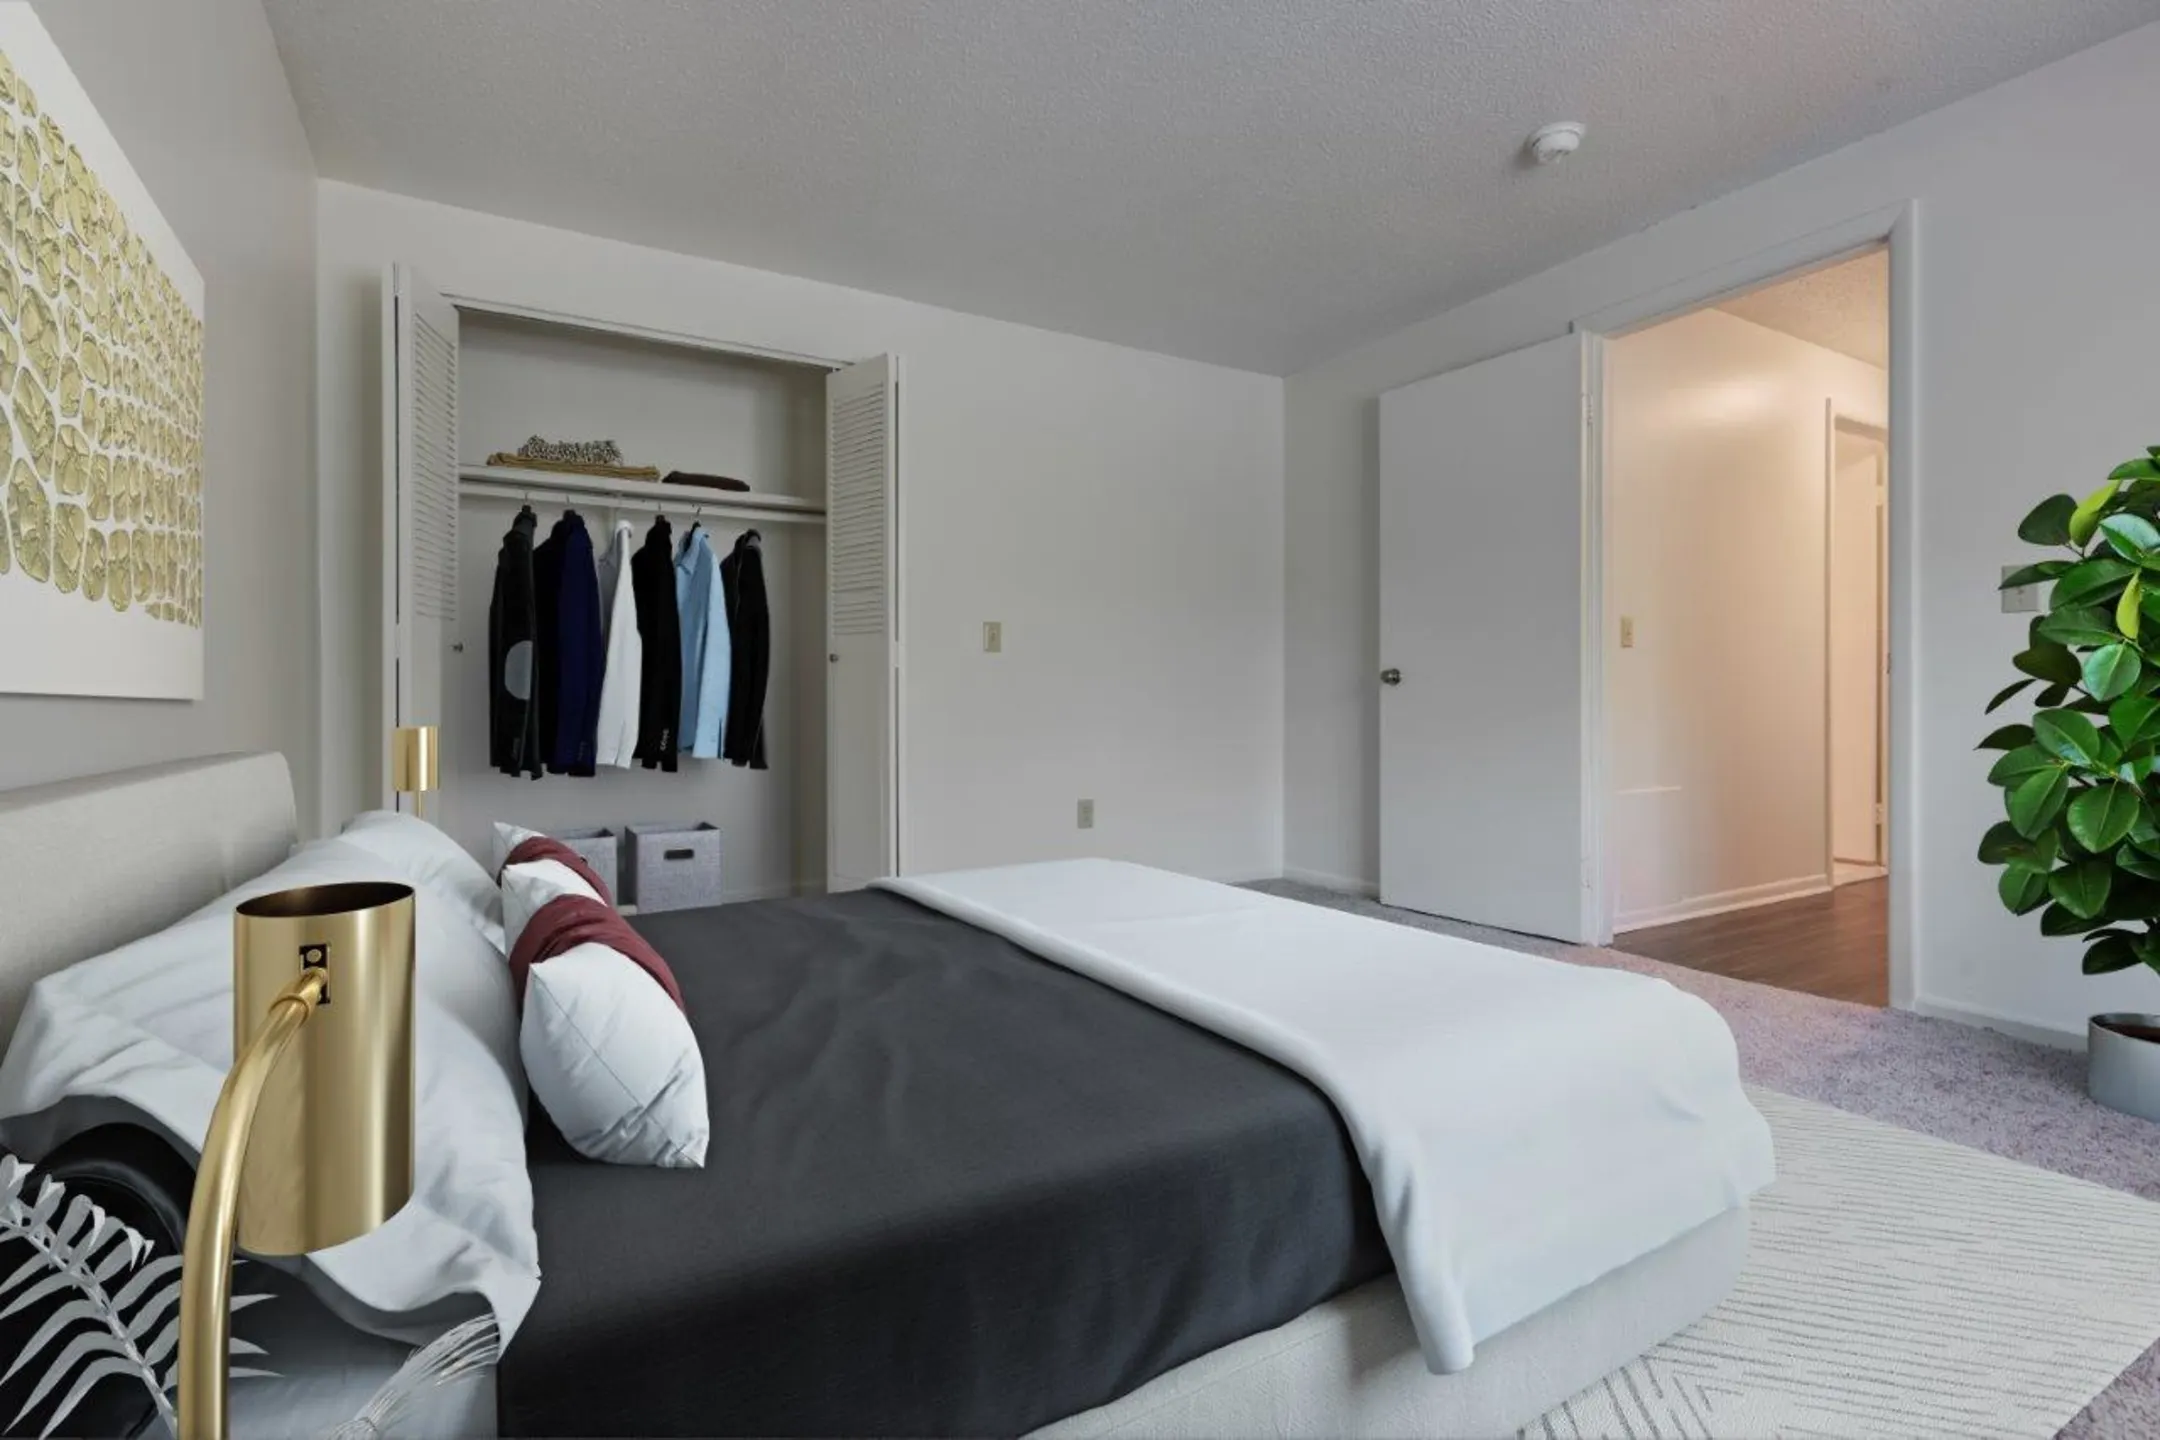 Bedroom - Henrietta Highlands - Henrietta, NY